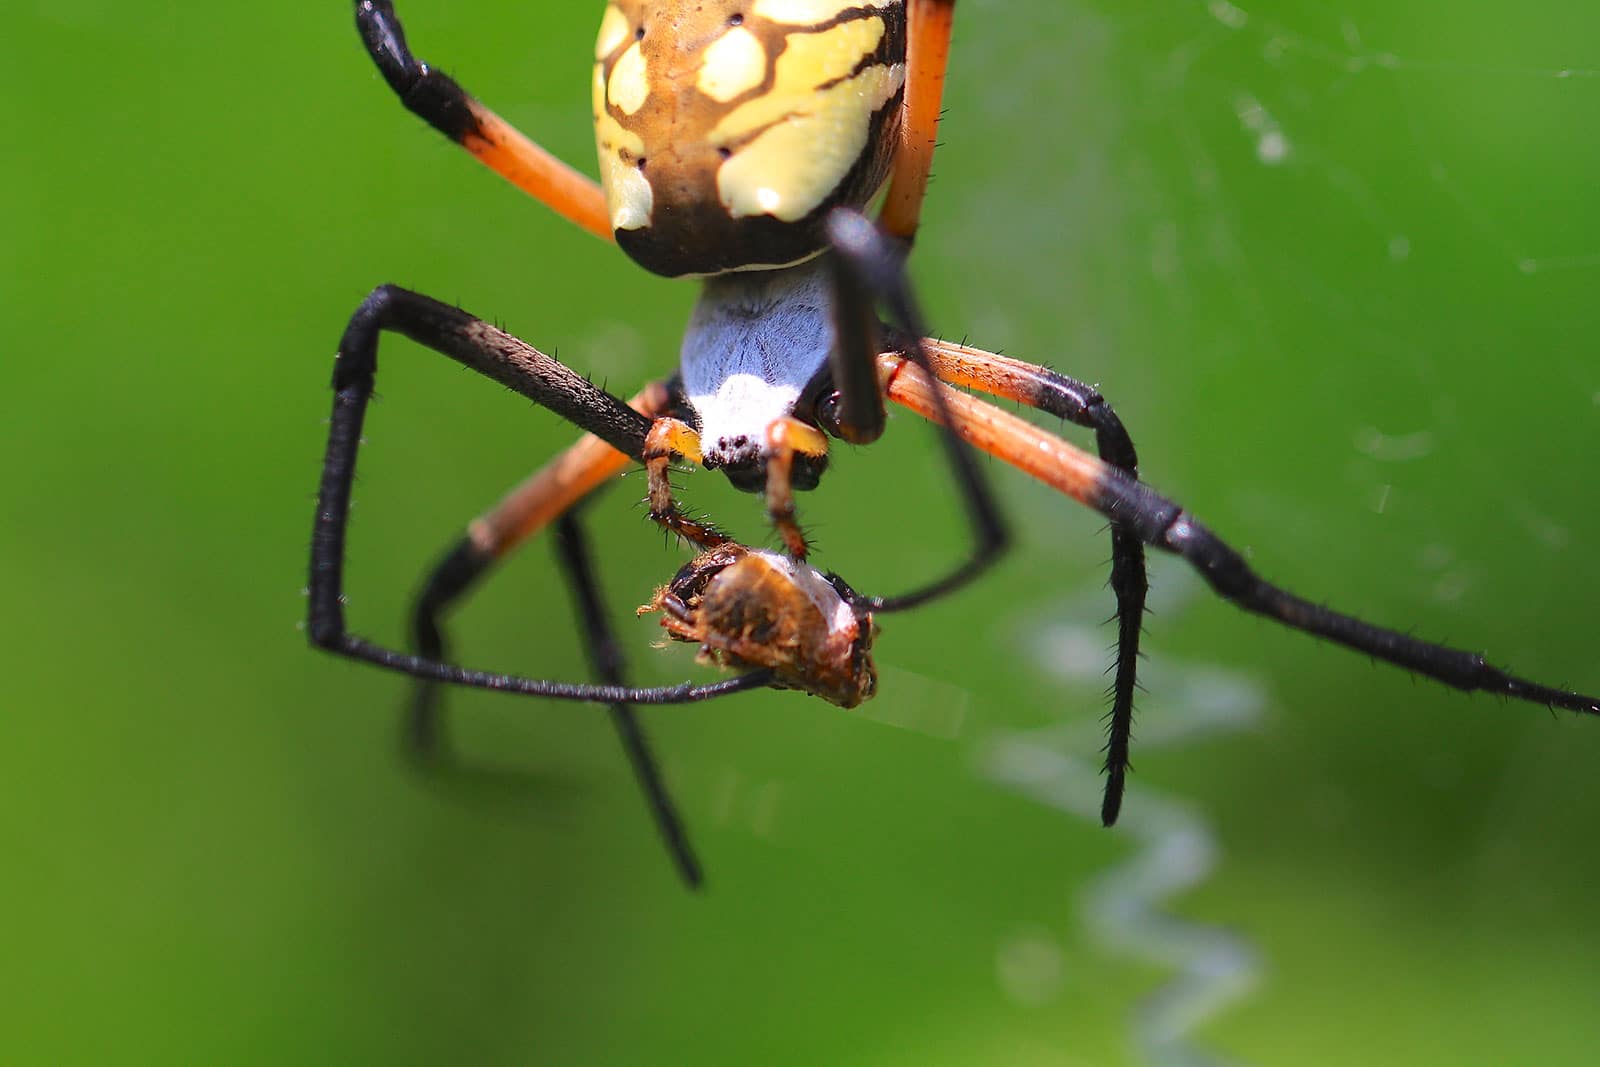 L'argiope Argiope Anasuja Est Perchée Sur Sa Toile Cette Araignée Est  Souvent Trouvée Dans Les Arbres Image stock - Image du trouvé, araignée:  250053265